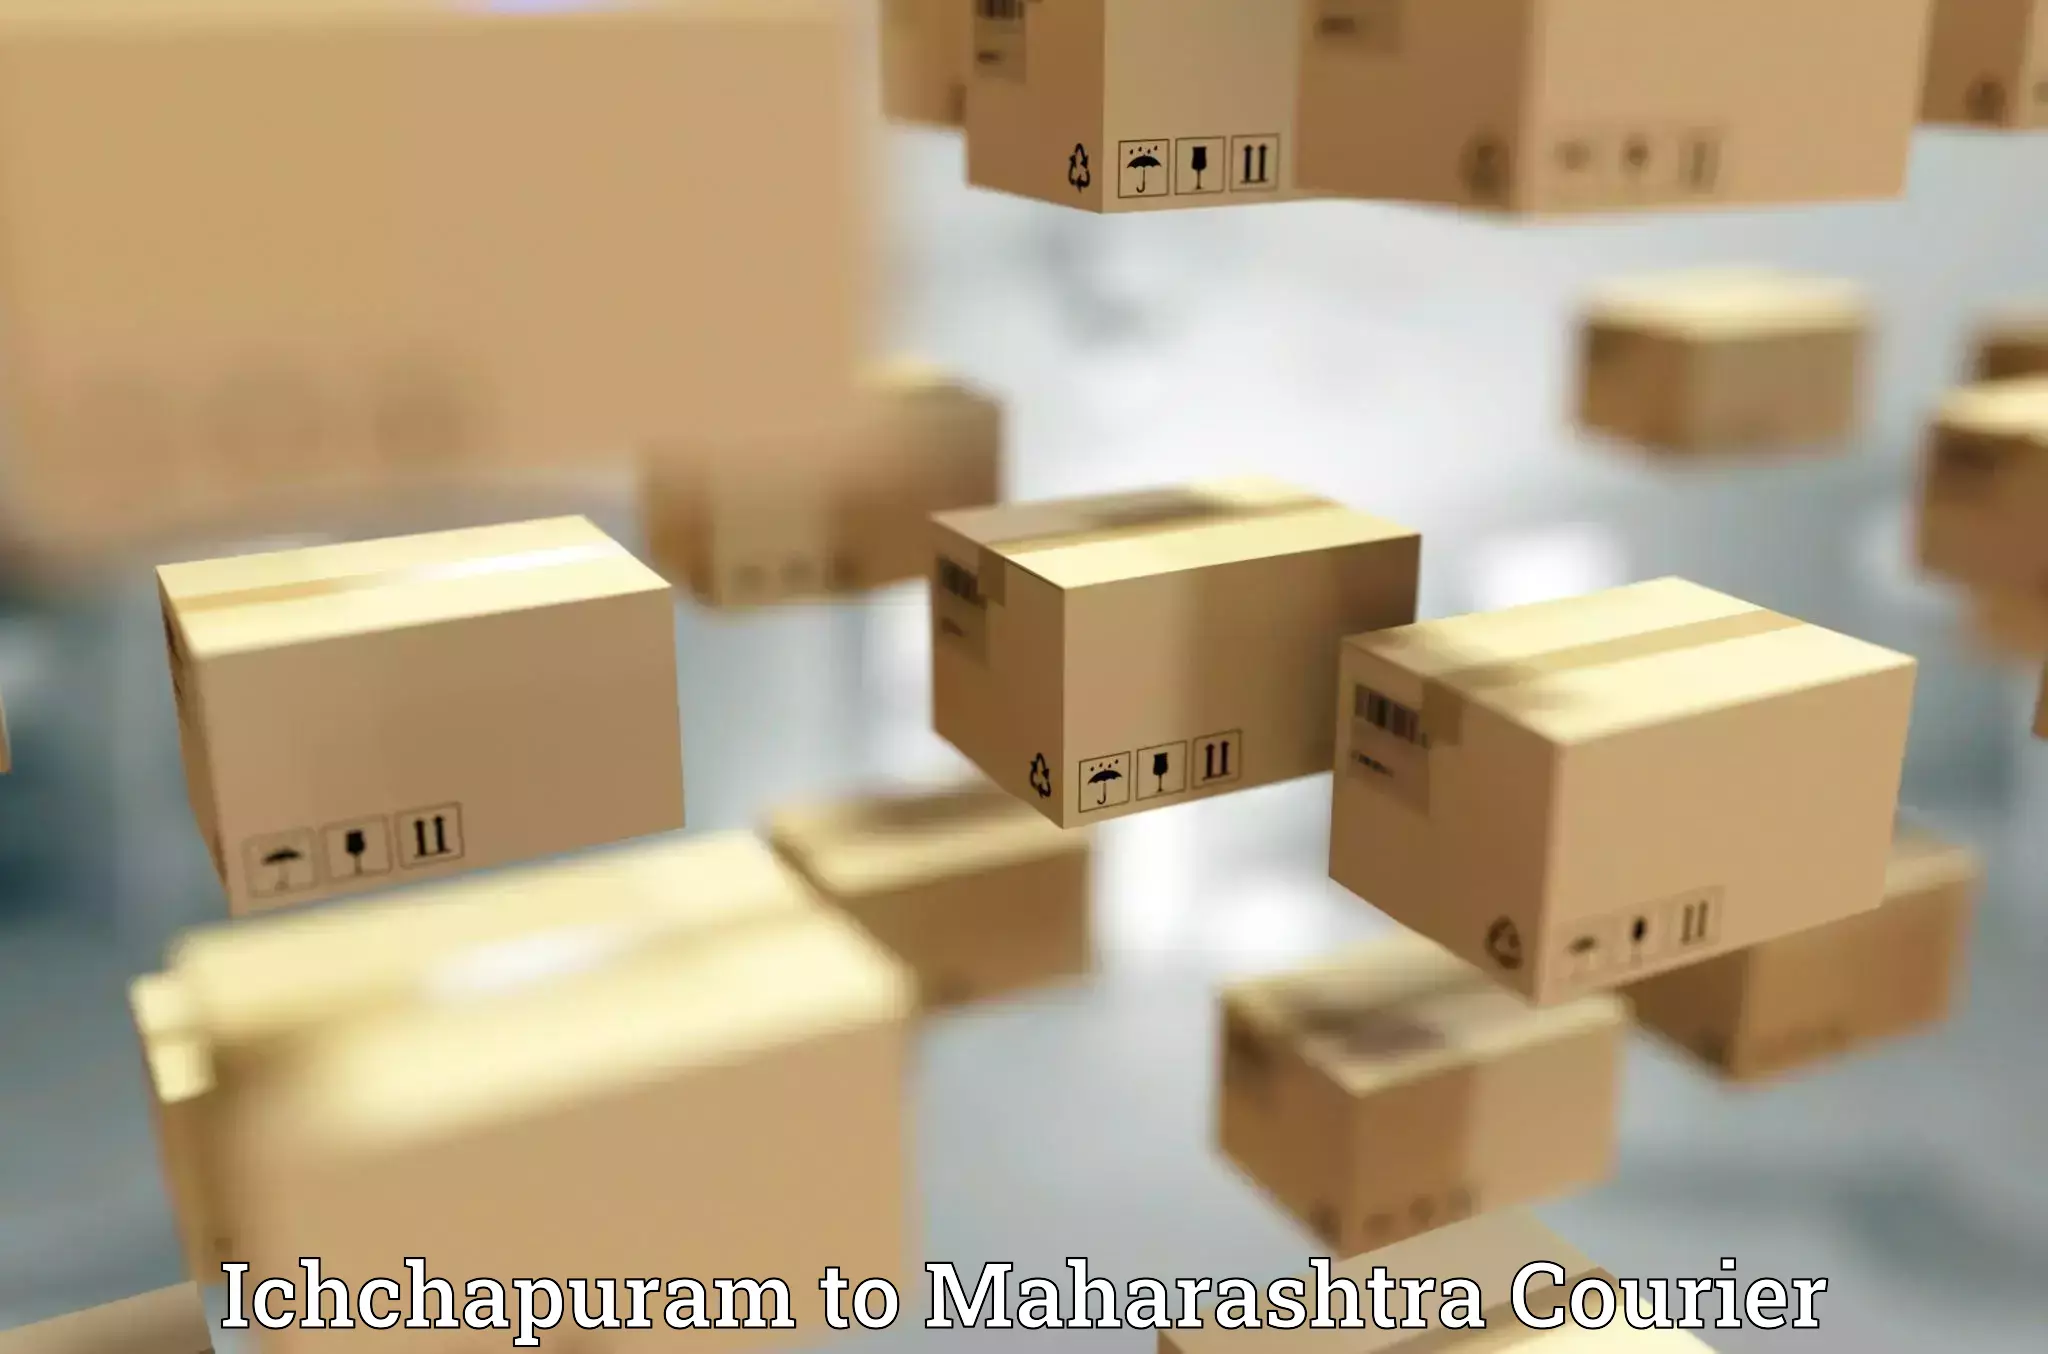 Automated parcel services Ichchapuram to Nashik